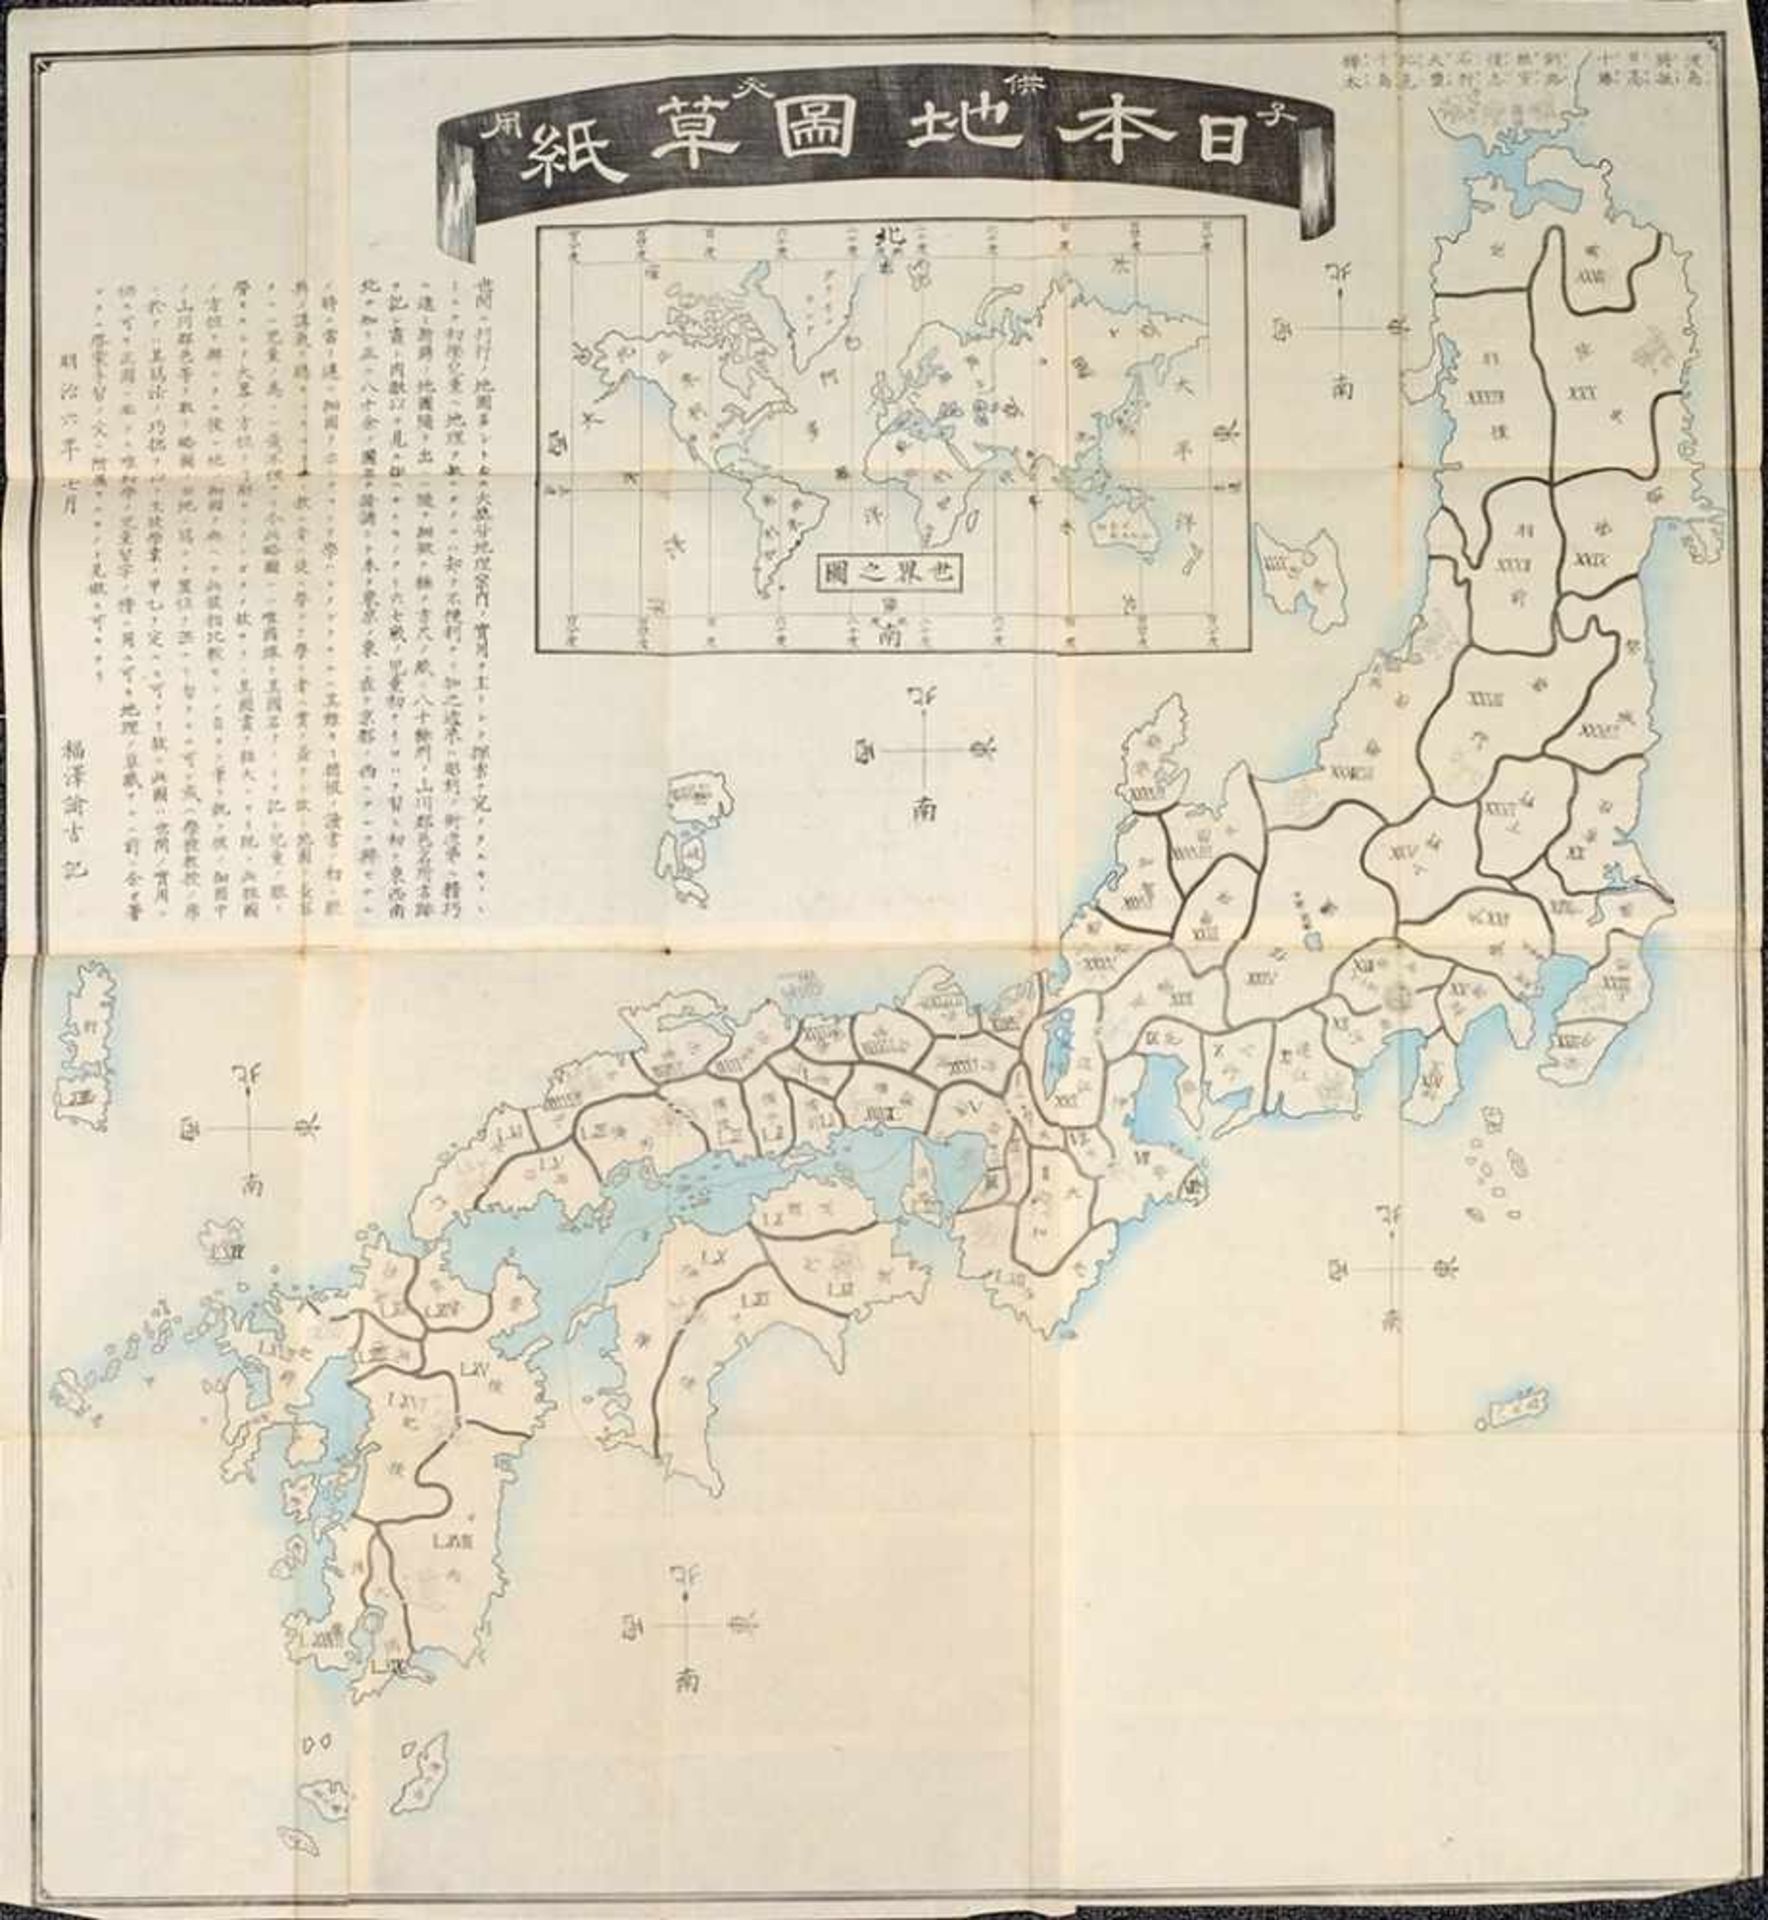 Japanische LandkarteHolzschnitt. Faltkarte. Titel, Bez. u. Legende in Japanisch. Richtungszeiger.